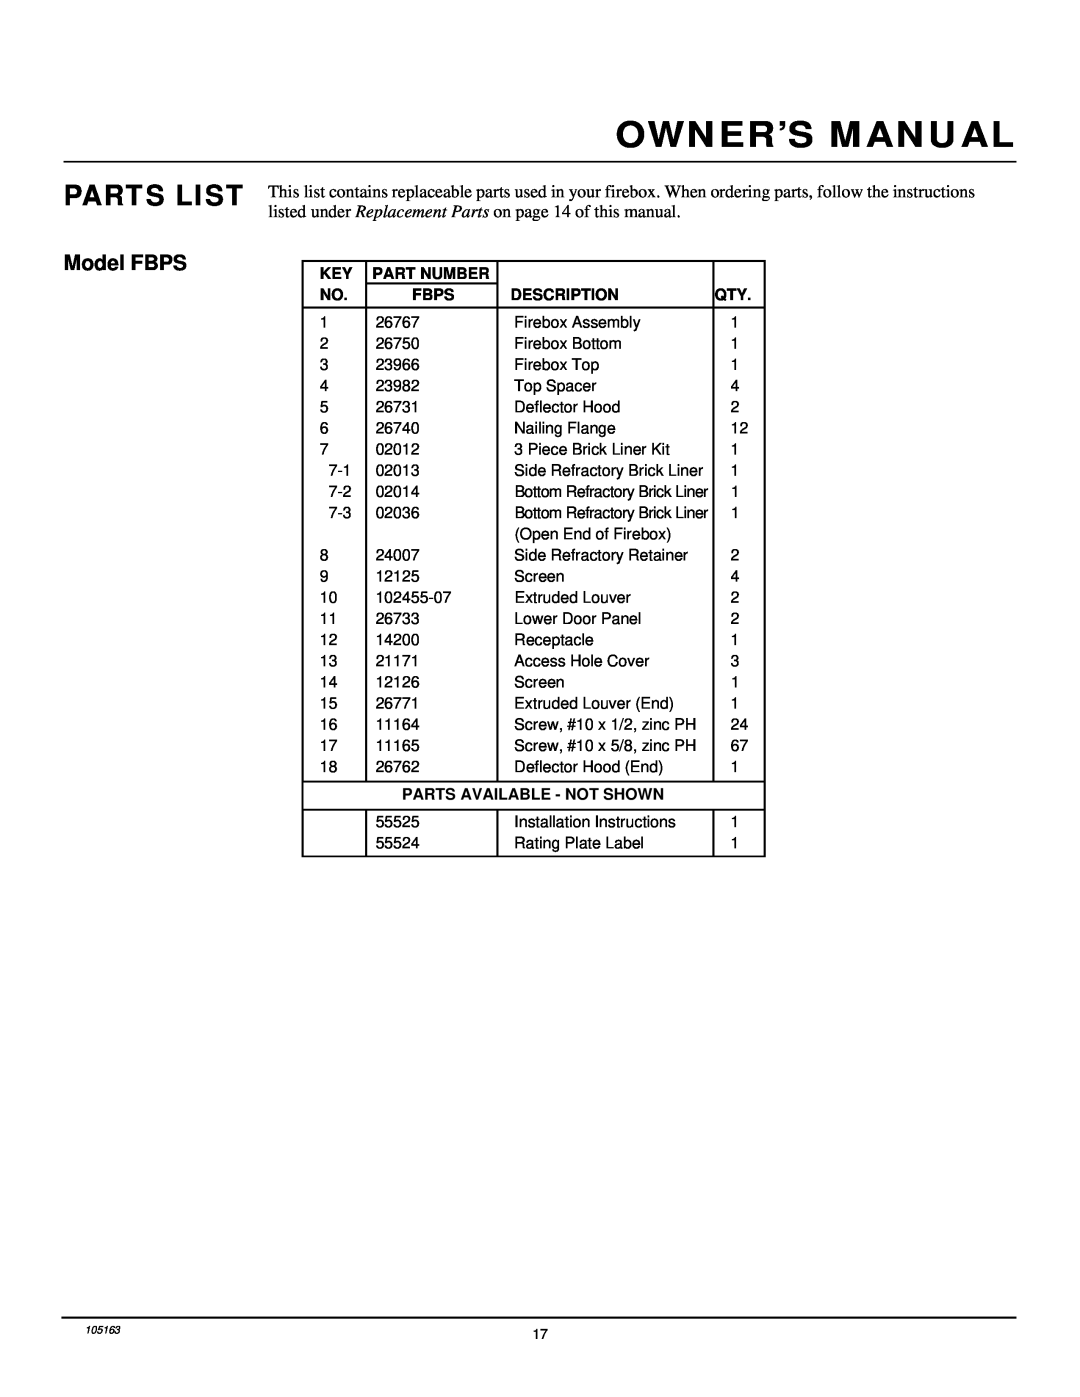 Desa FBPS installation manual Parts List, Part Number, Fbps, Description, Parts Available - Not Shown 